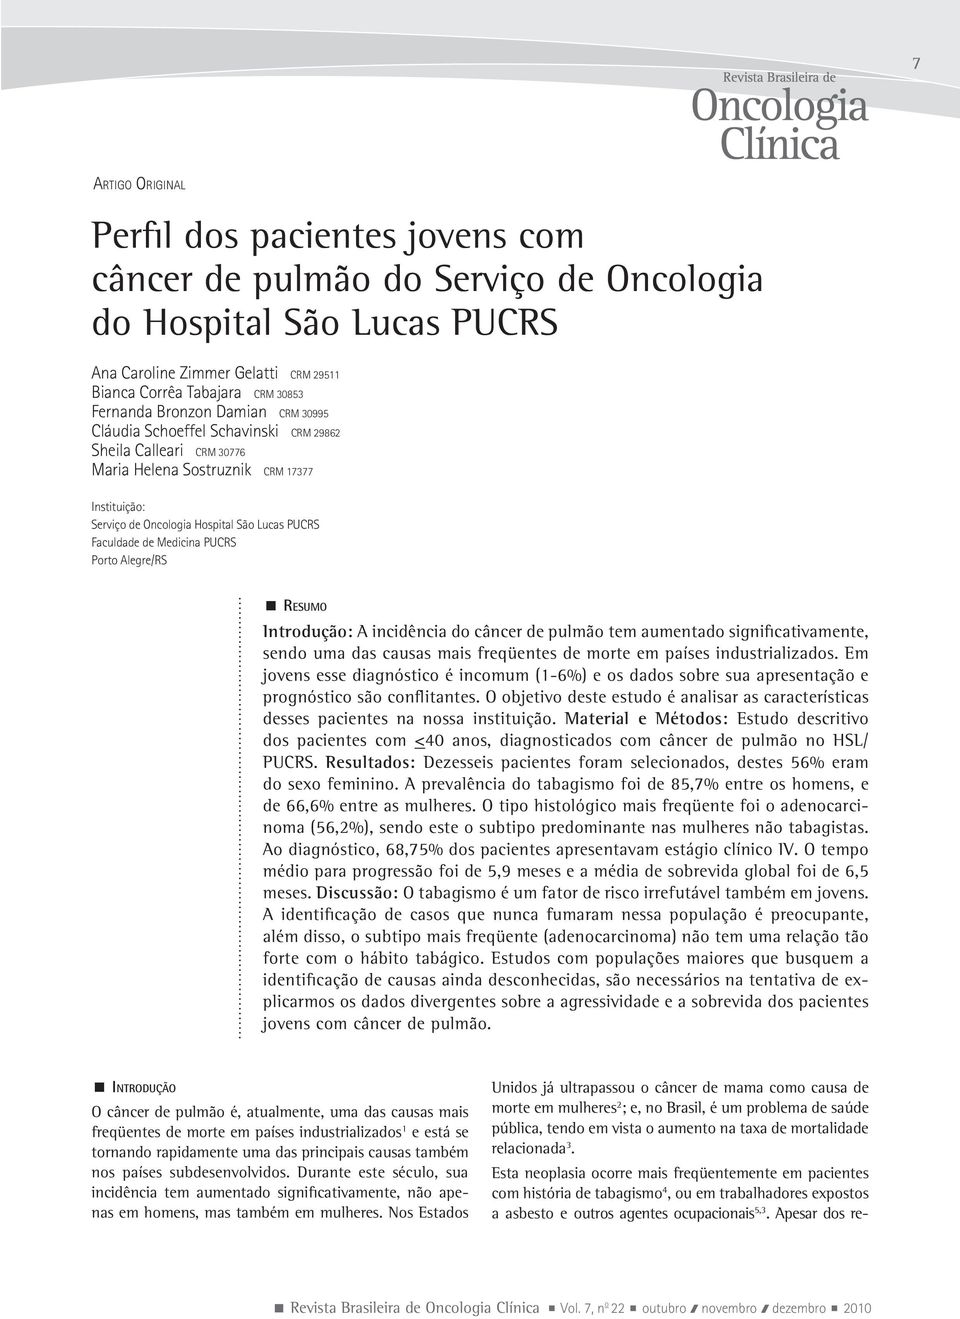 Medicina PUCRS Porto Alegre/RS Resumo Introdução: A incidência do câncer de pulmão tem aumentado significativamente, sendo uma das causas mais freqüentes de morte em países industrializados.